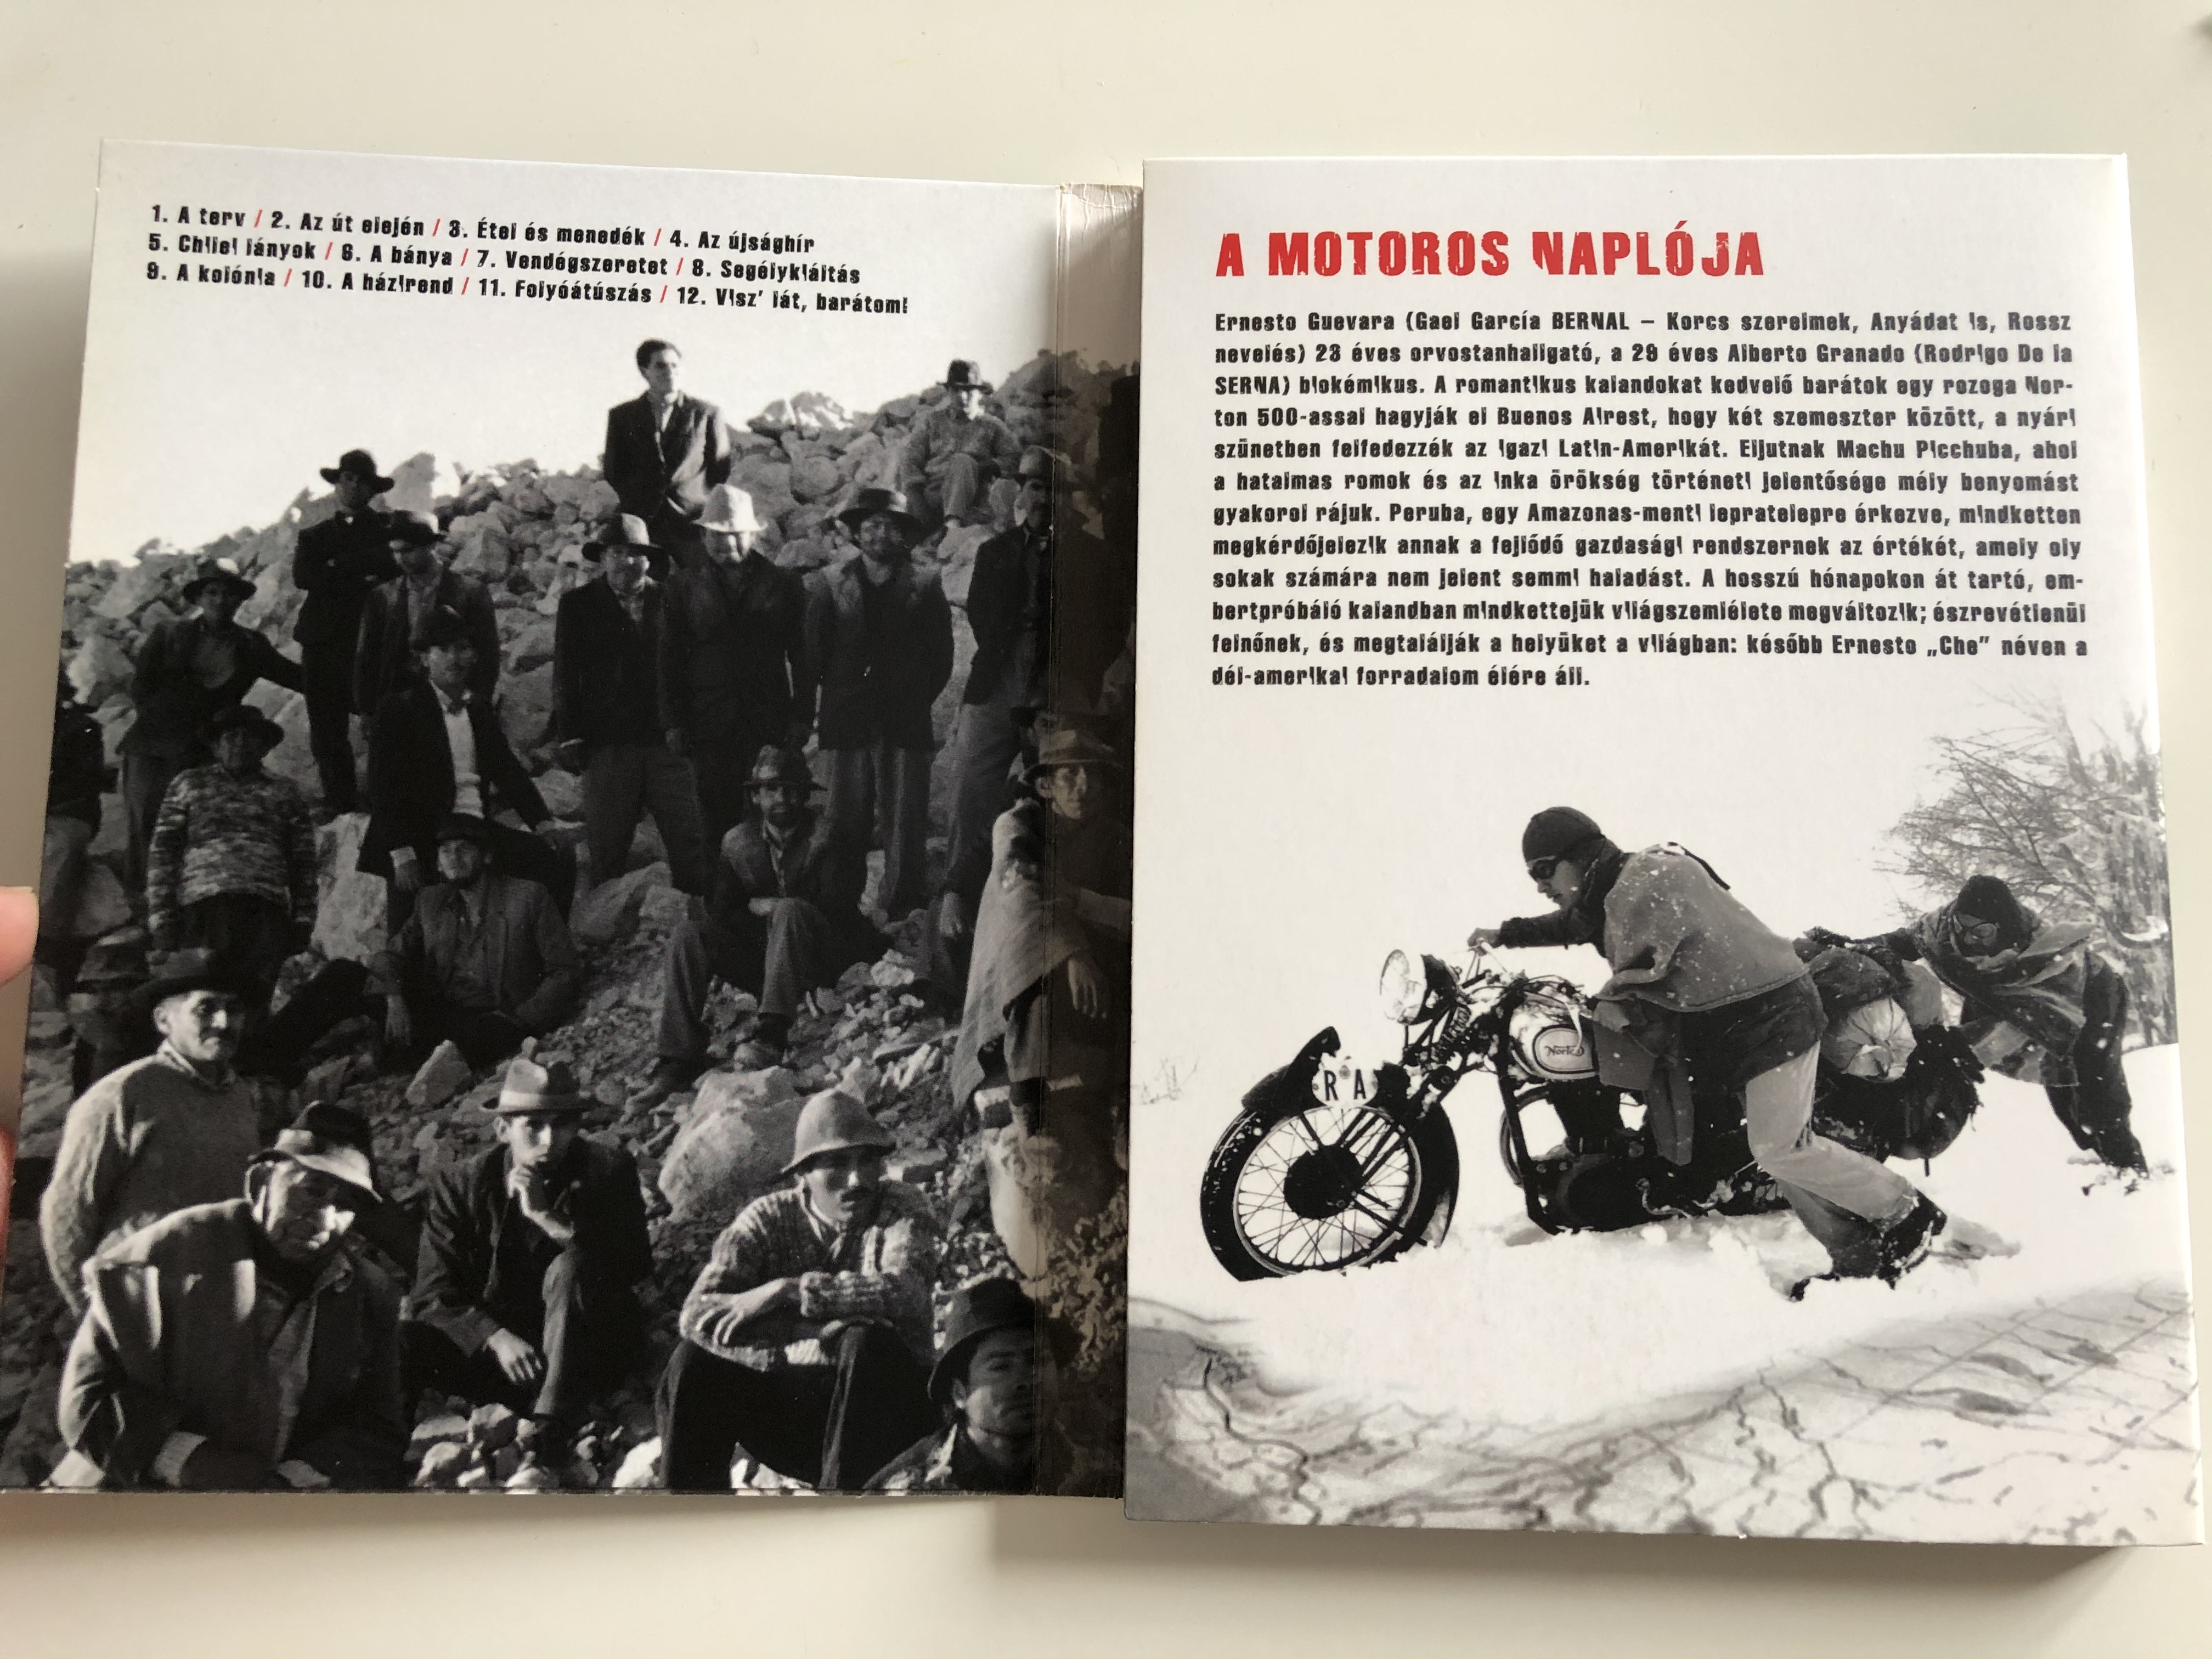 the-motorcycle-diaries-2-dvd-set-diarios-de-motocicleta-dvd-2004-che-guevara-3-.jpg